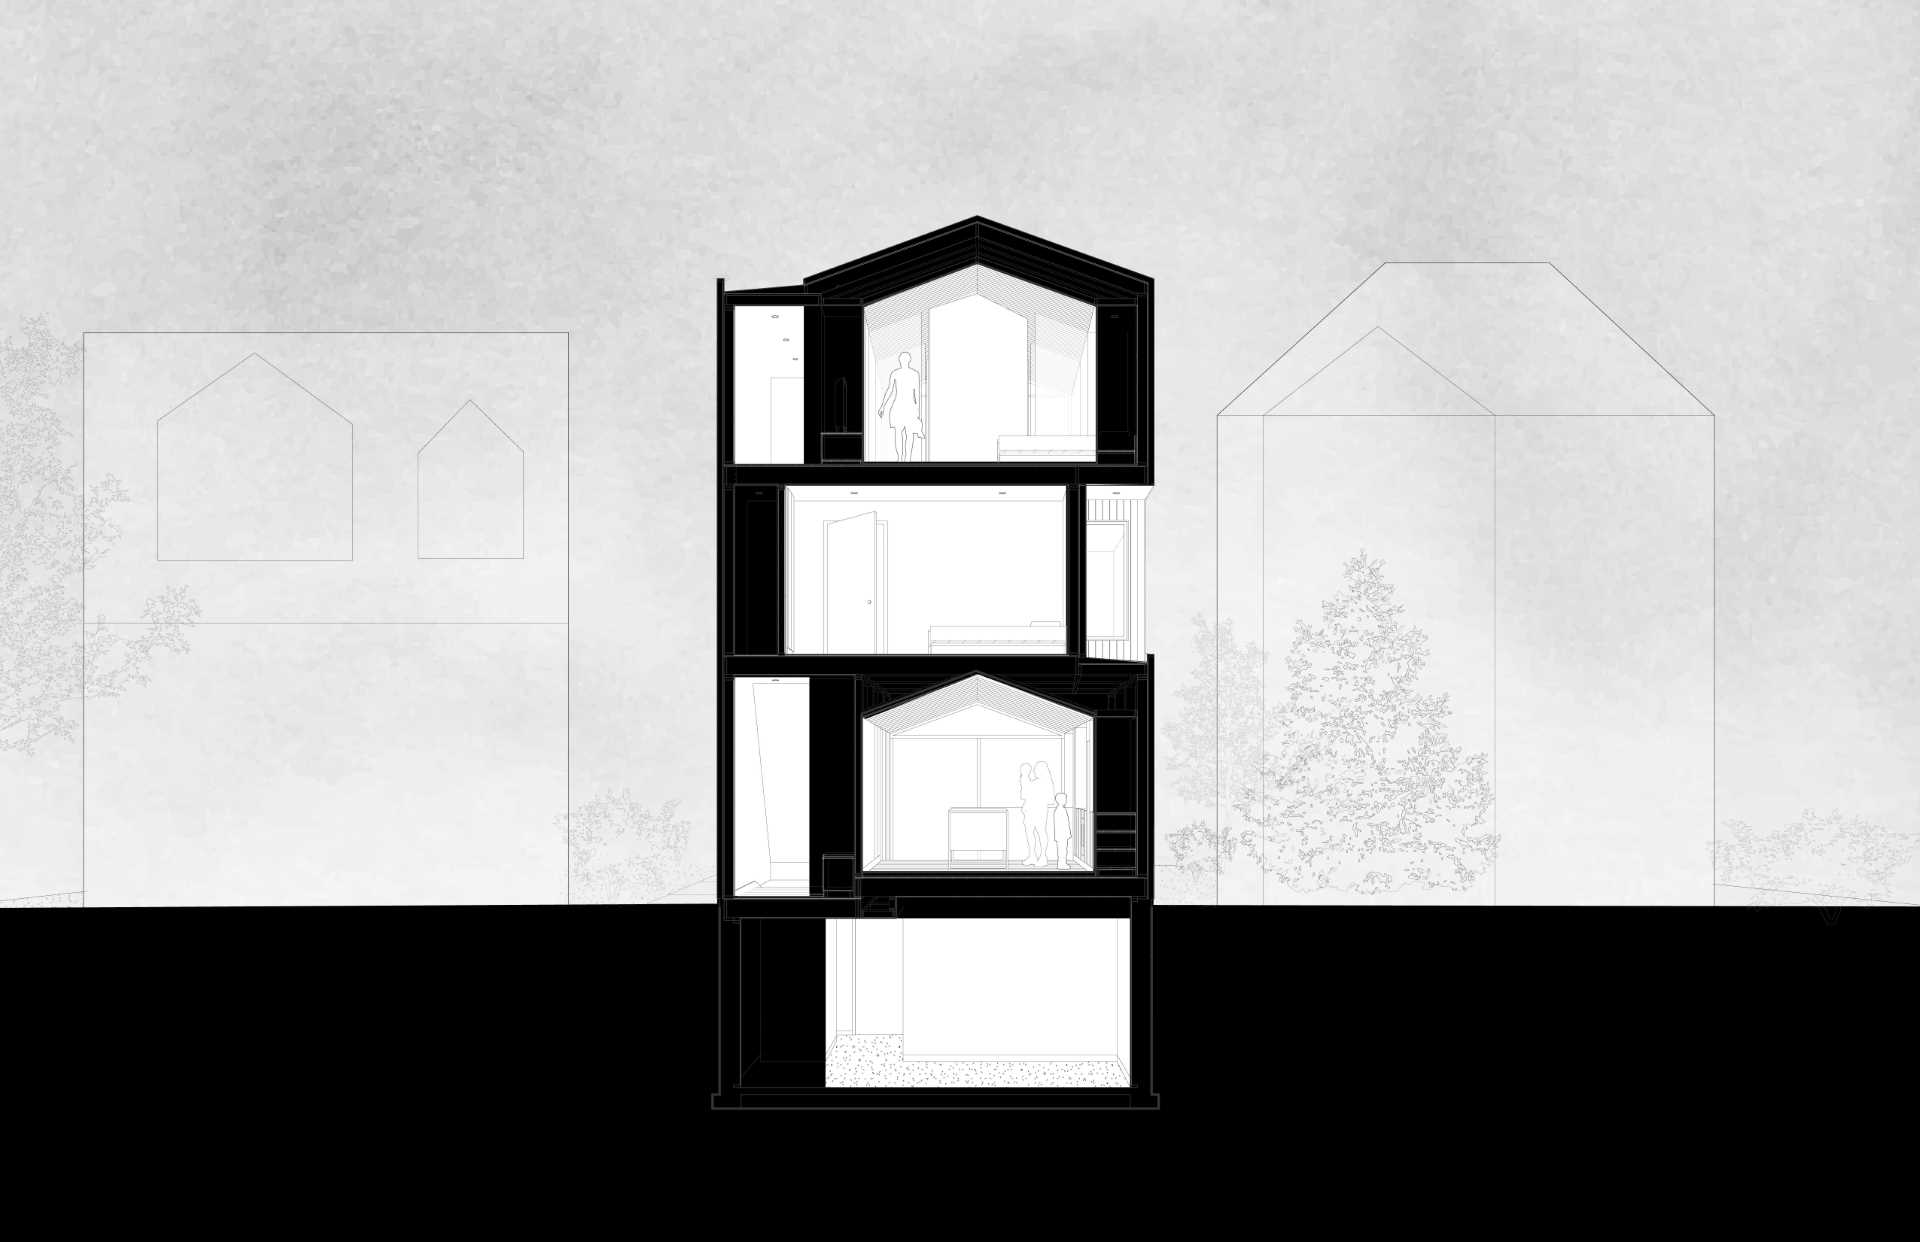 Desen arhitectural pentru o casă modernă.